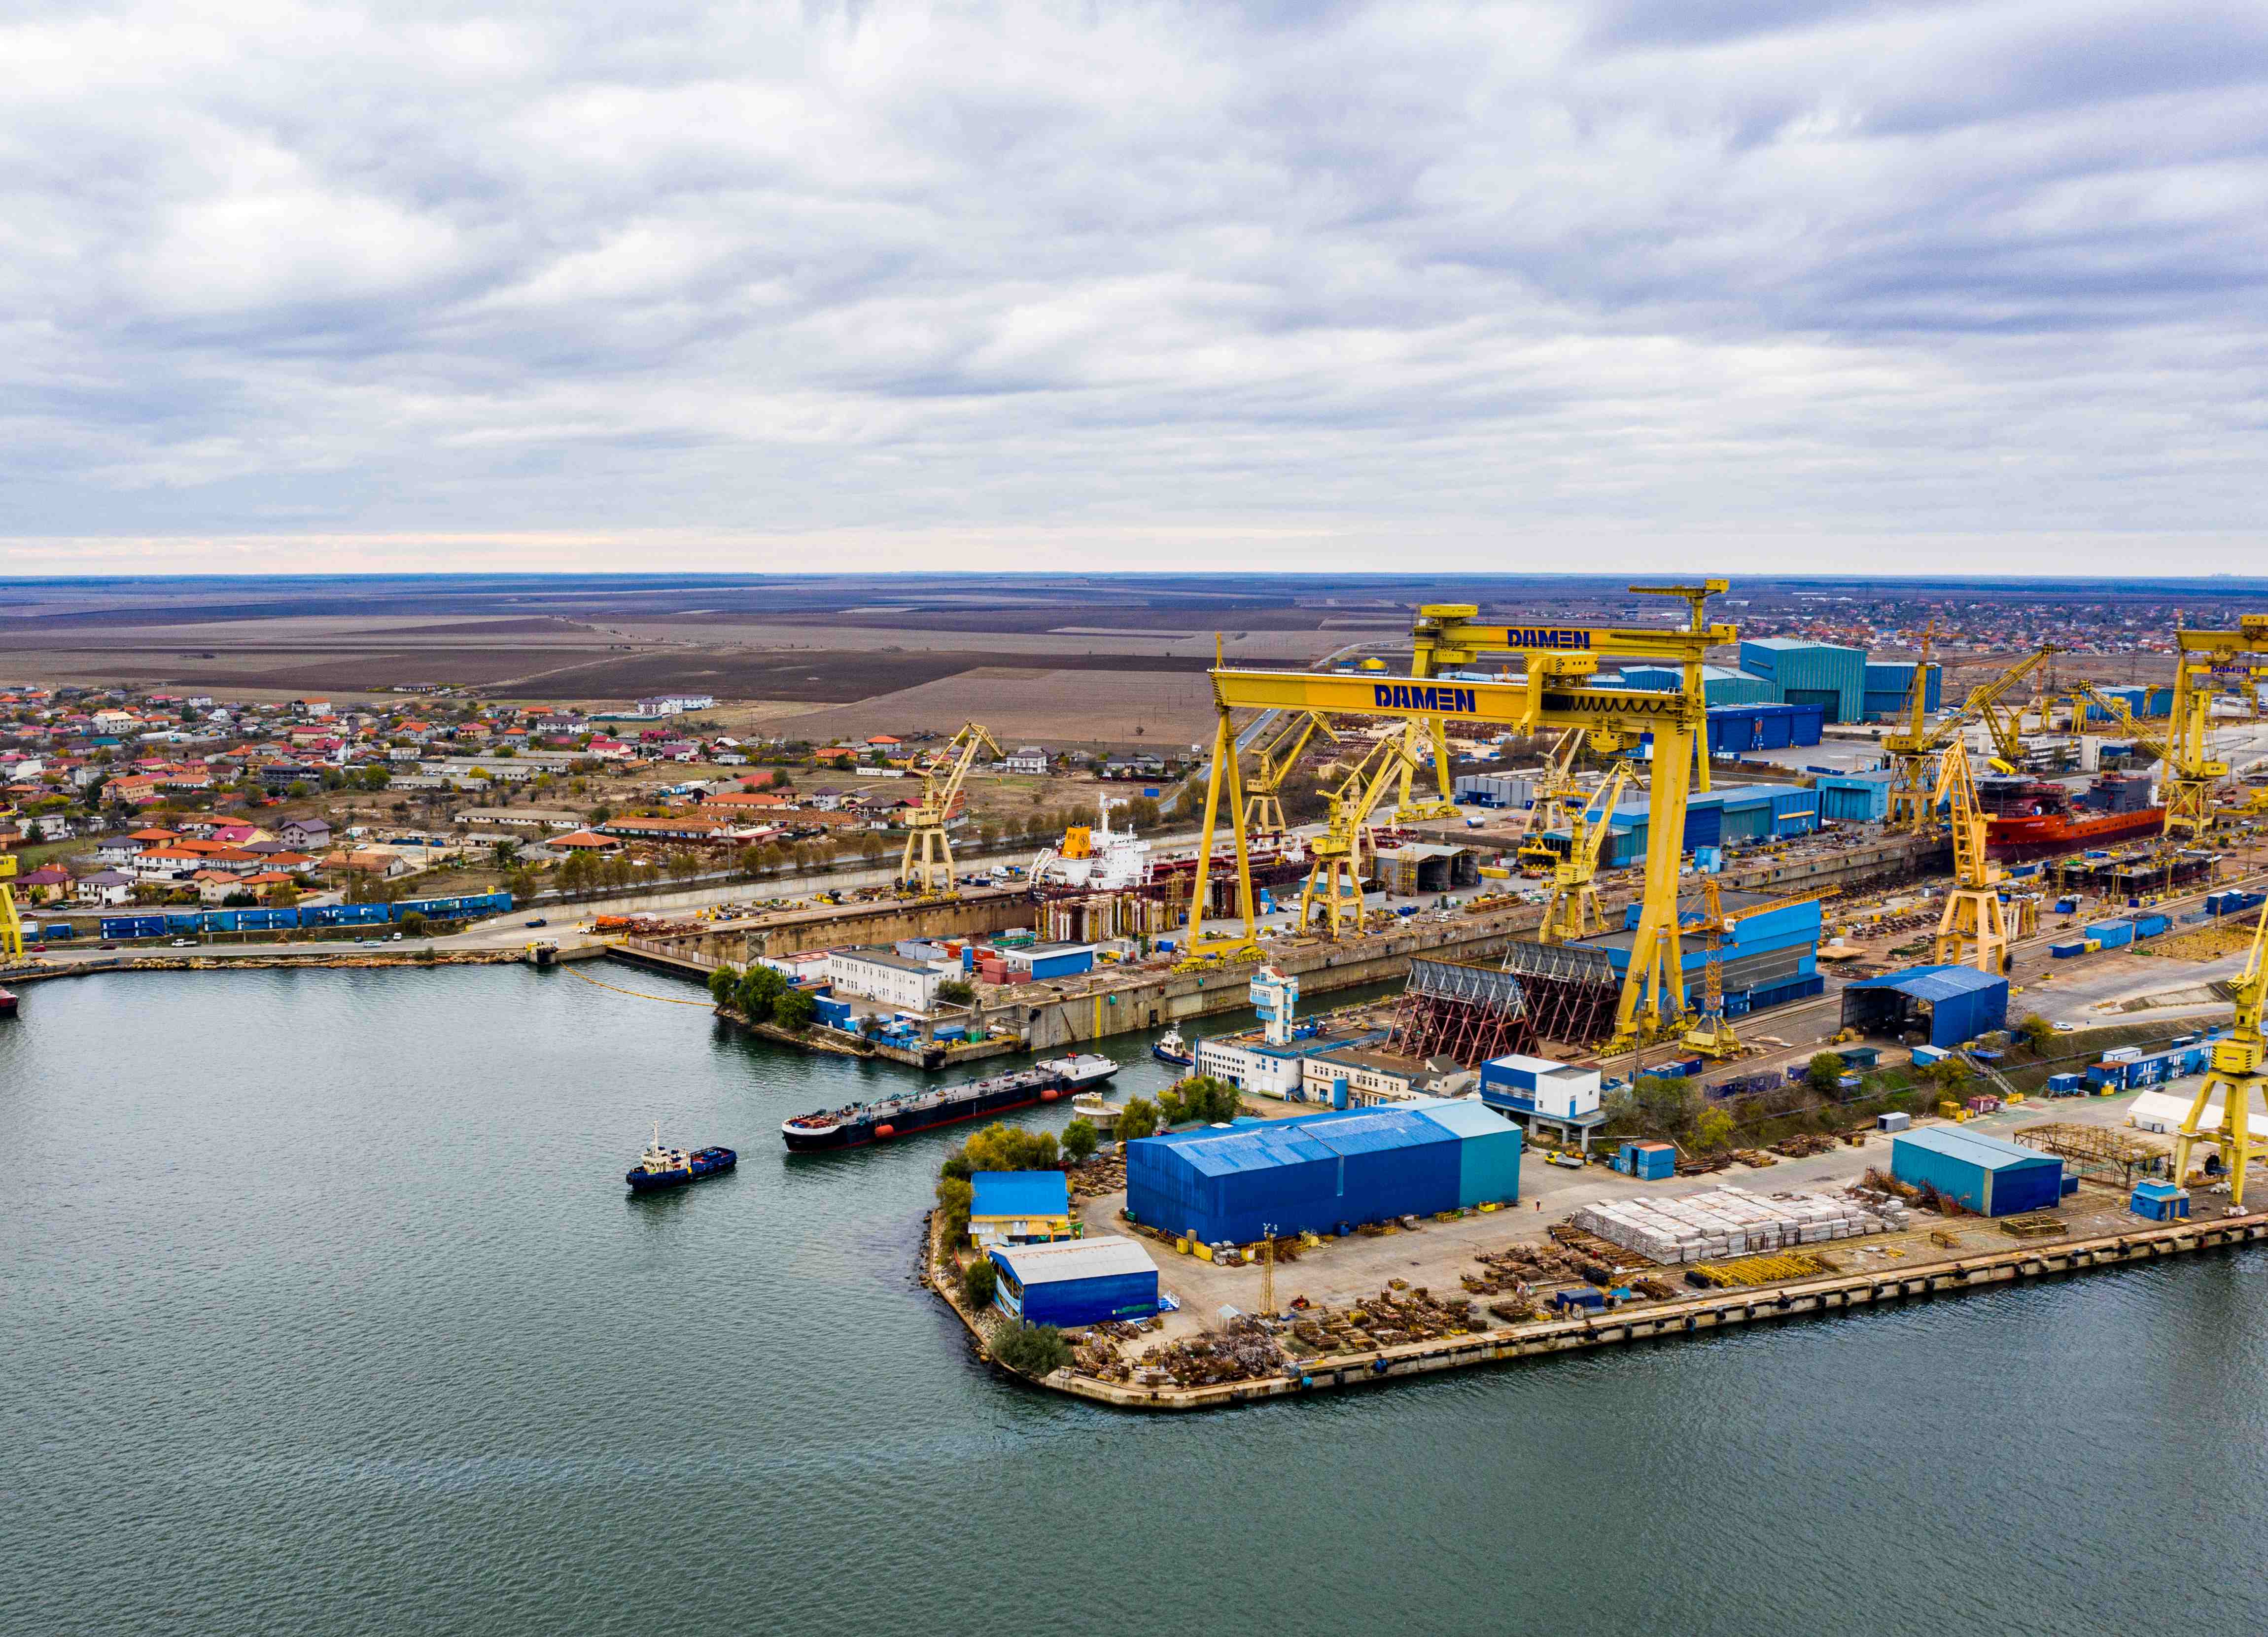 Şantierul Naval Damen Mangalia şi-a cerut falimentul în instanţă